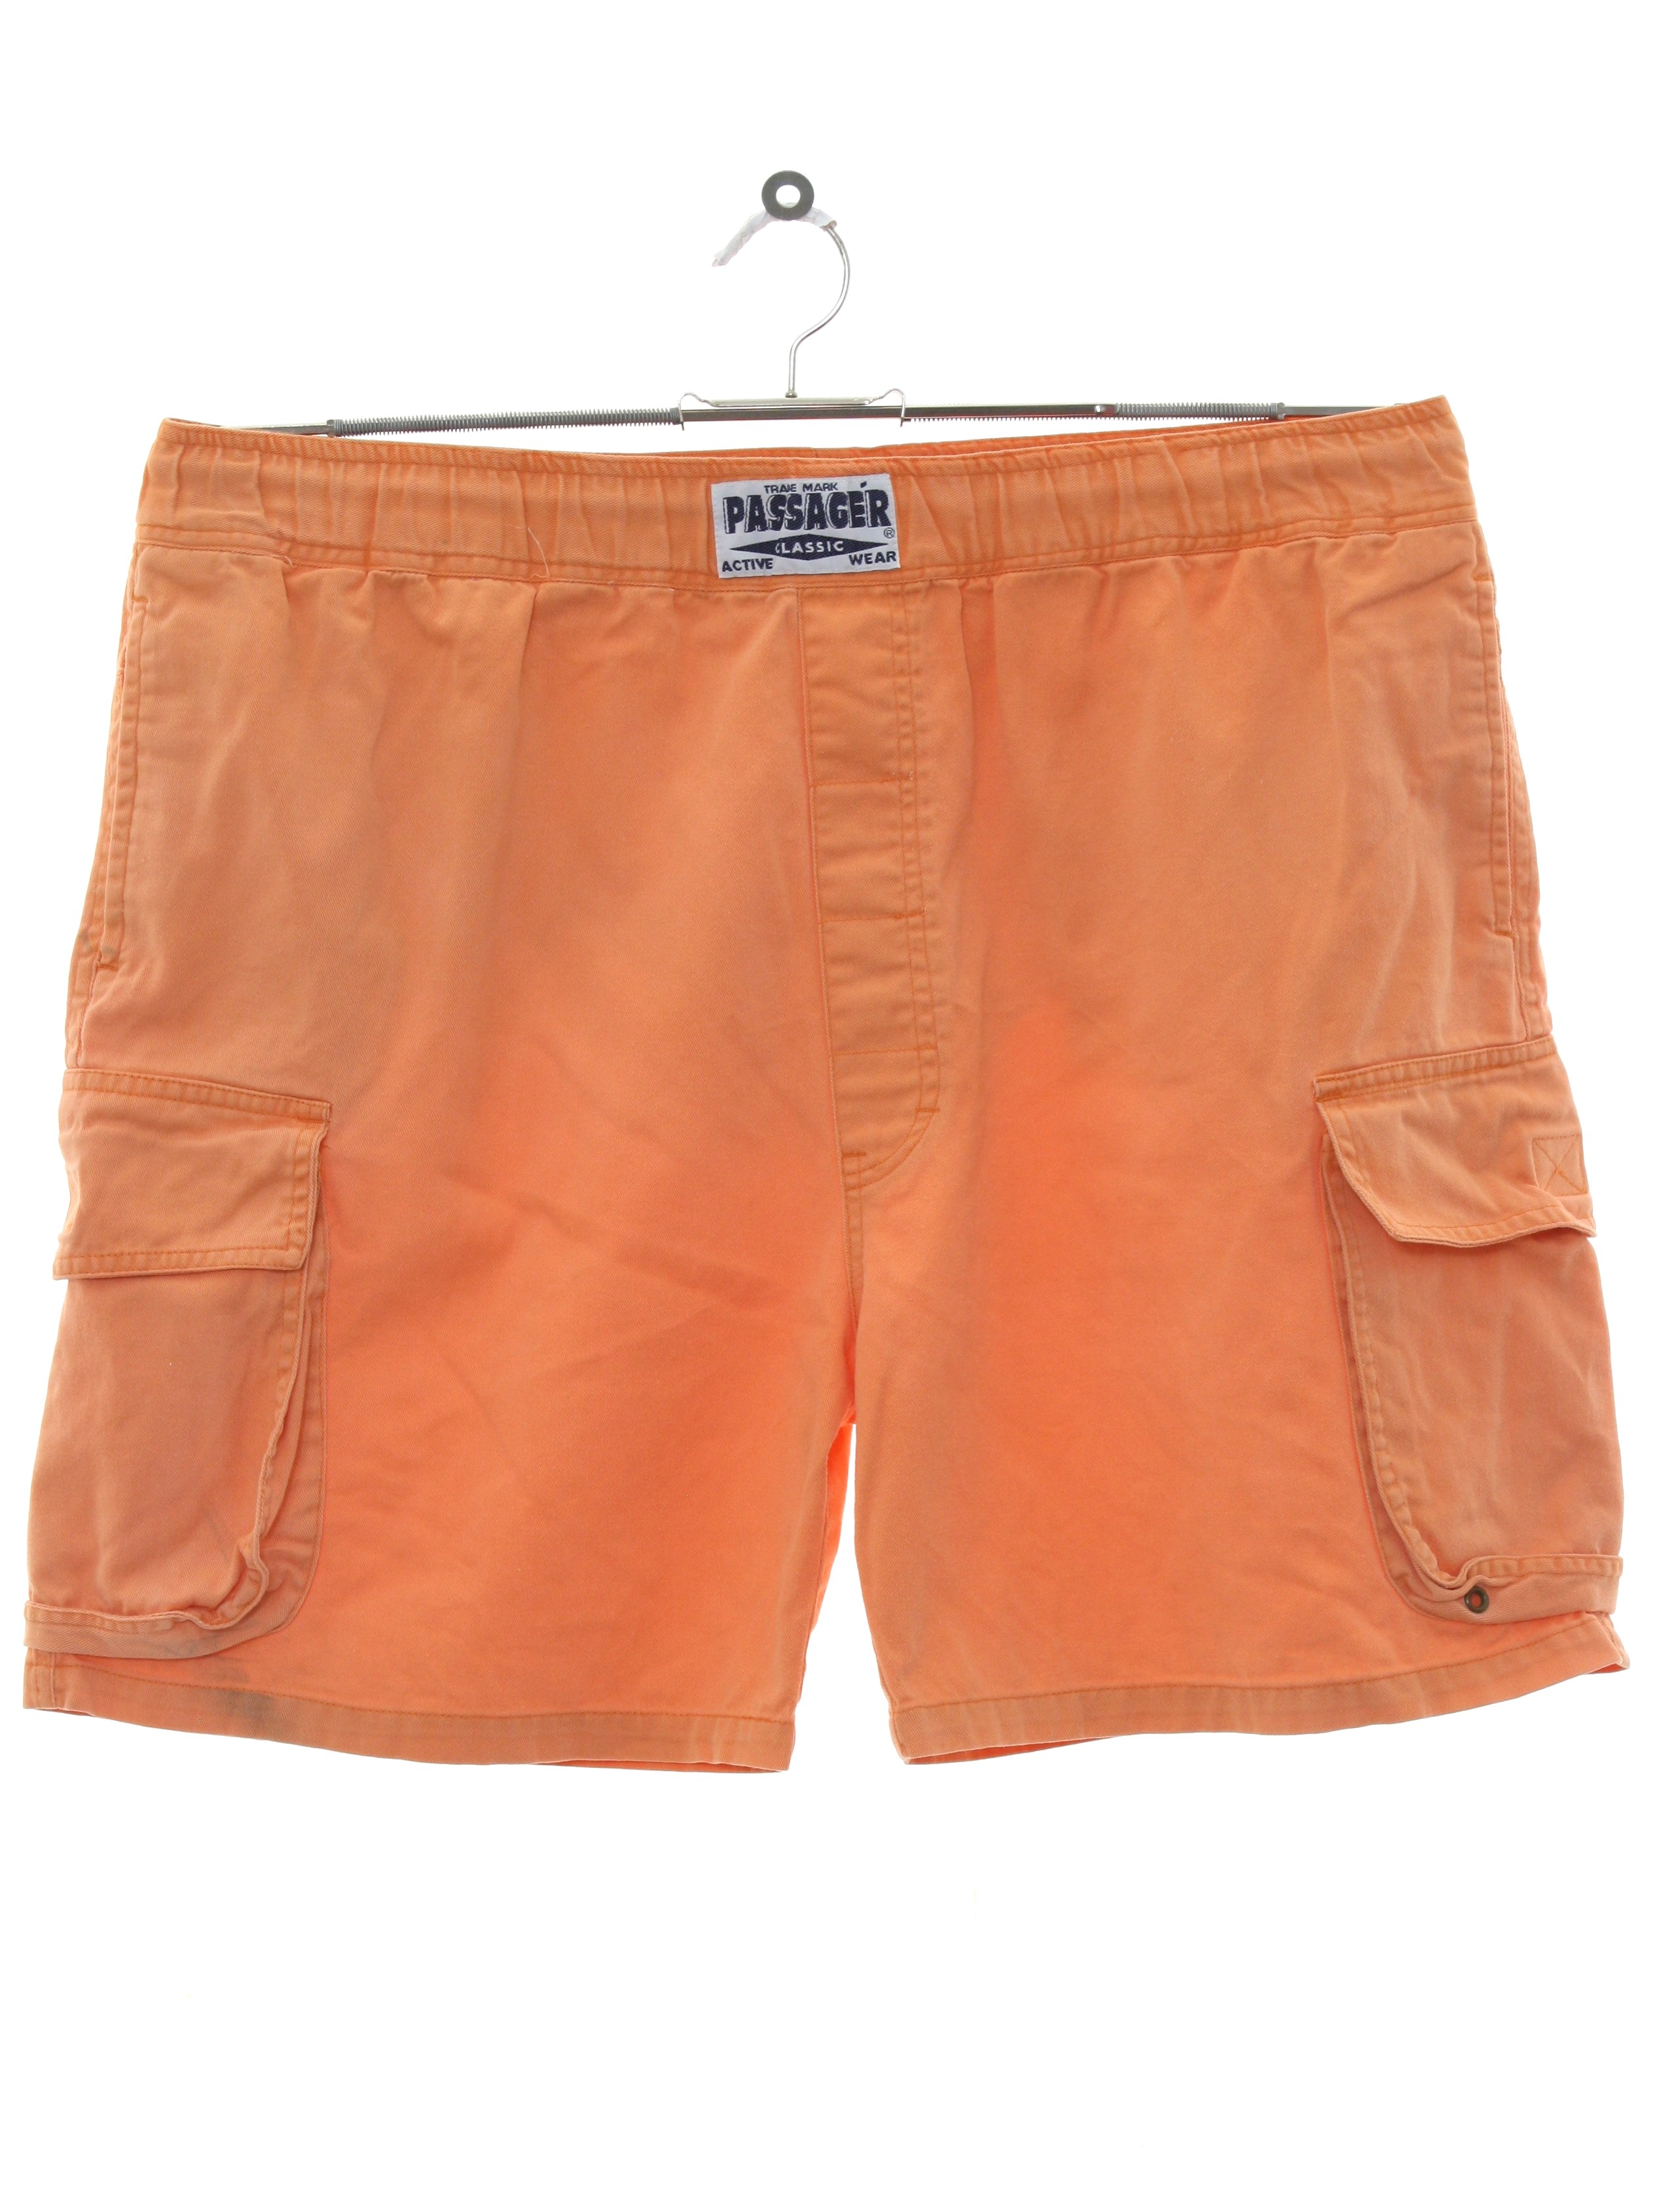 1980s Passager Shorts: 80s -Passager- Mens light dusty orange cotton ...